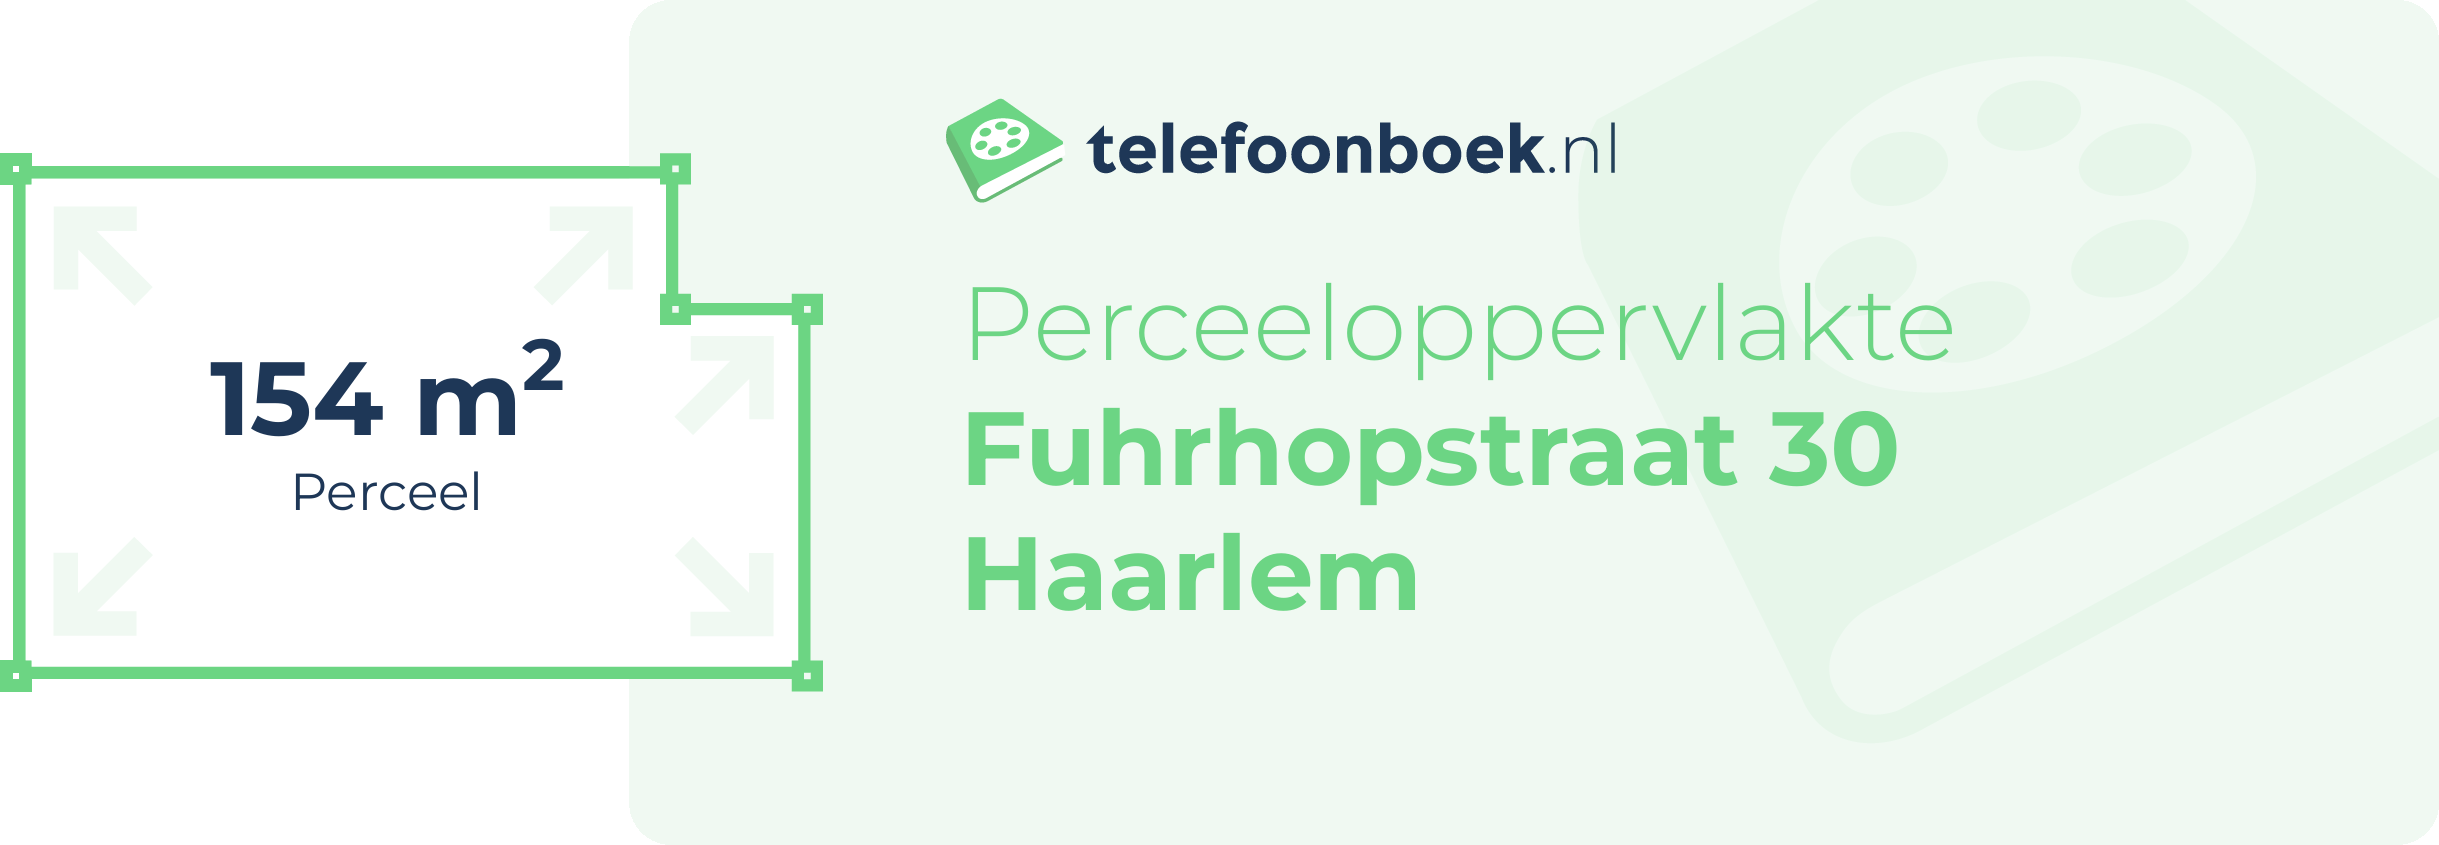 Perceeloppervlakte Fuhrhopstraat 30 Haarlem